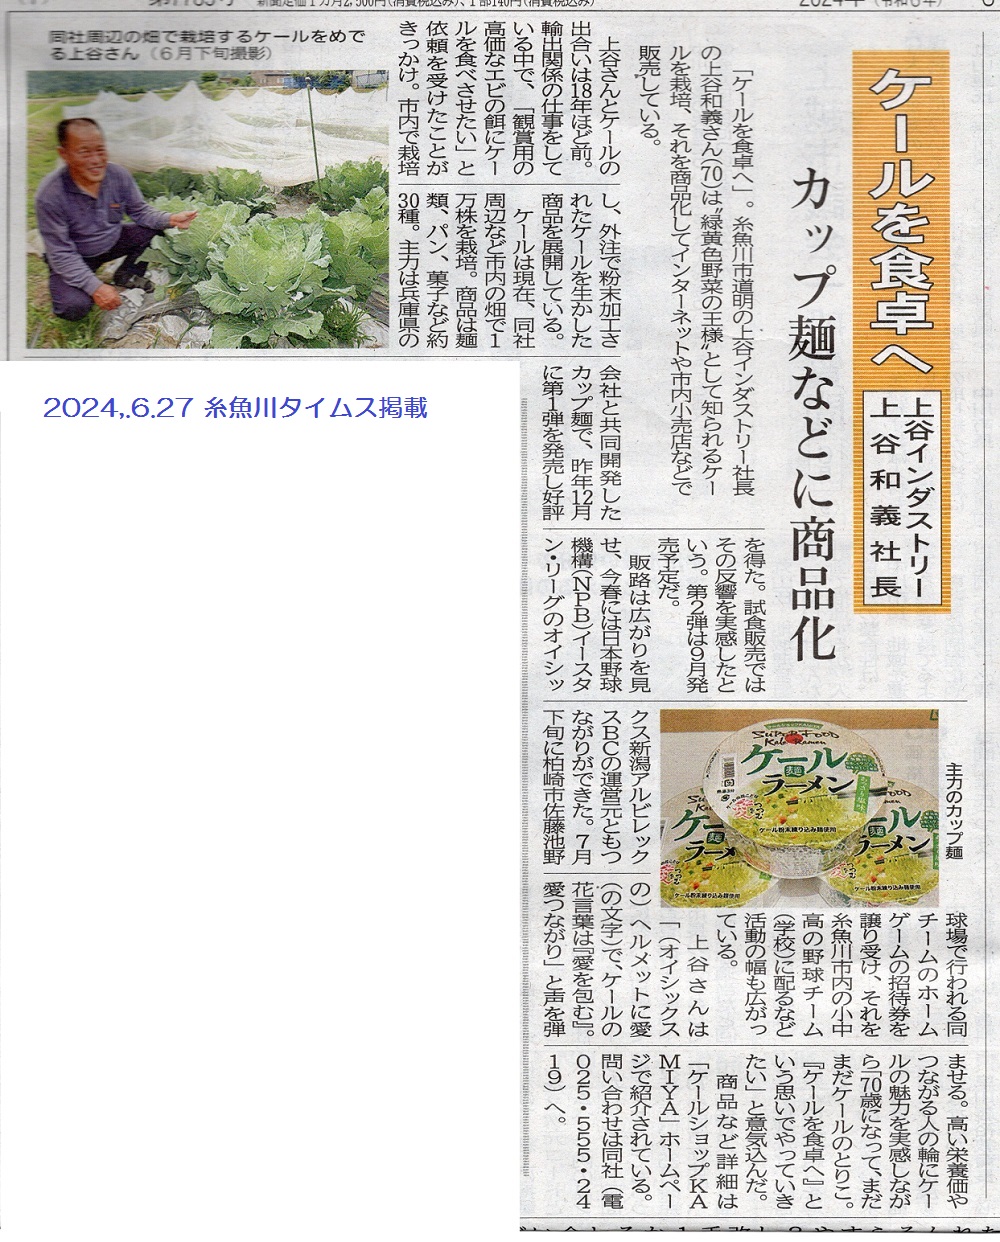 ケールカップ麺販売 メディア掲載記事